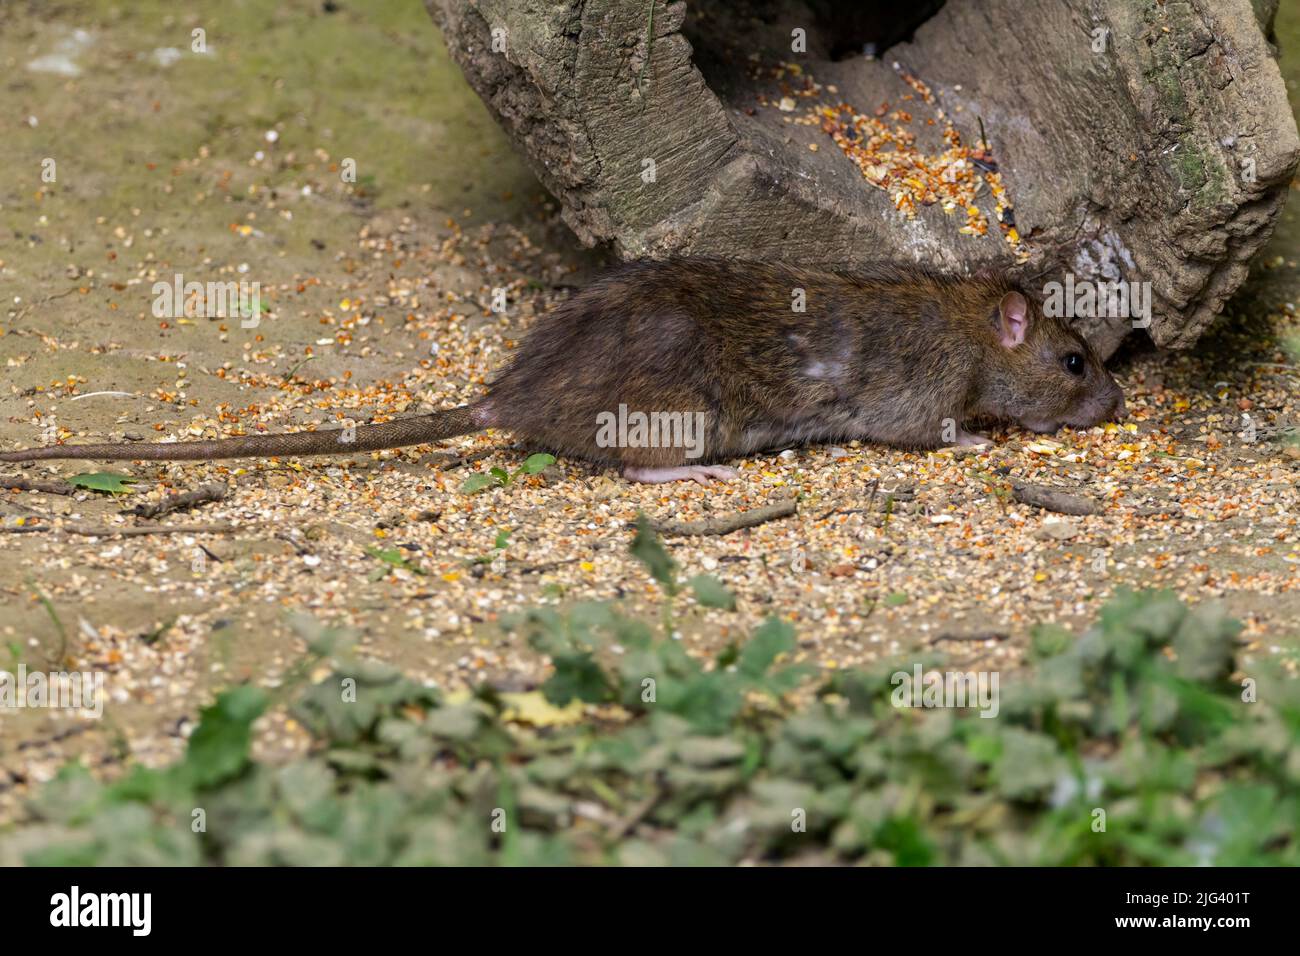 Rat brun (hotus norvegicus) se nourrissant de graines déversées dans une peau d'oiseau, fourrure brune grise longue queue squameuse grandes oreilles arrondies nez rose et pieds yeux noirs Banque D'Images